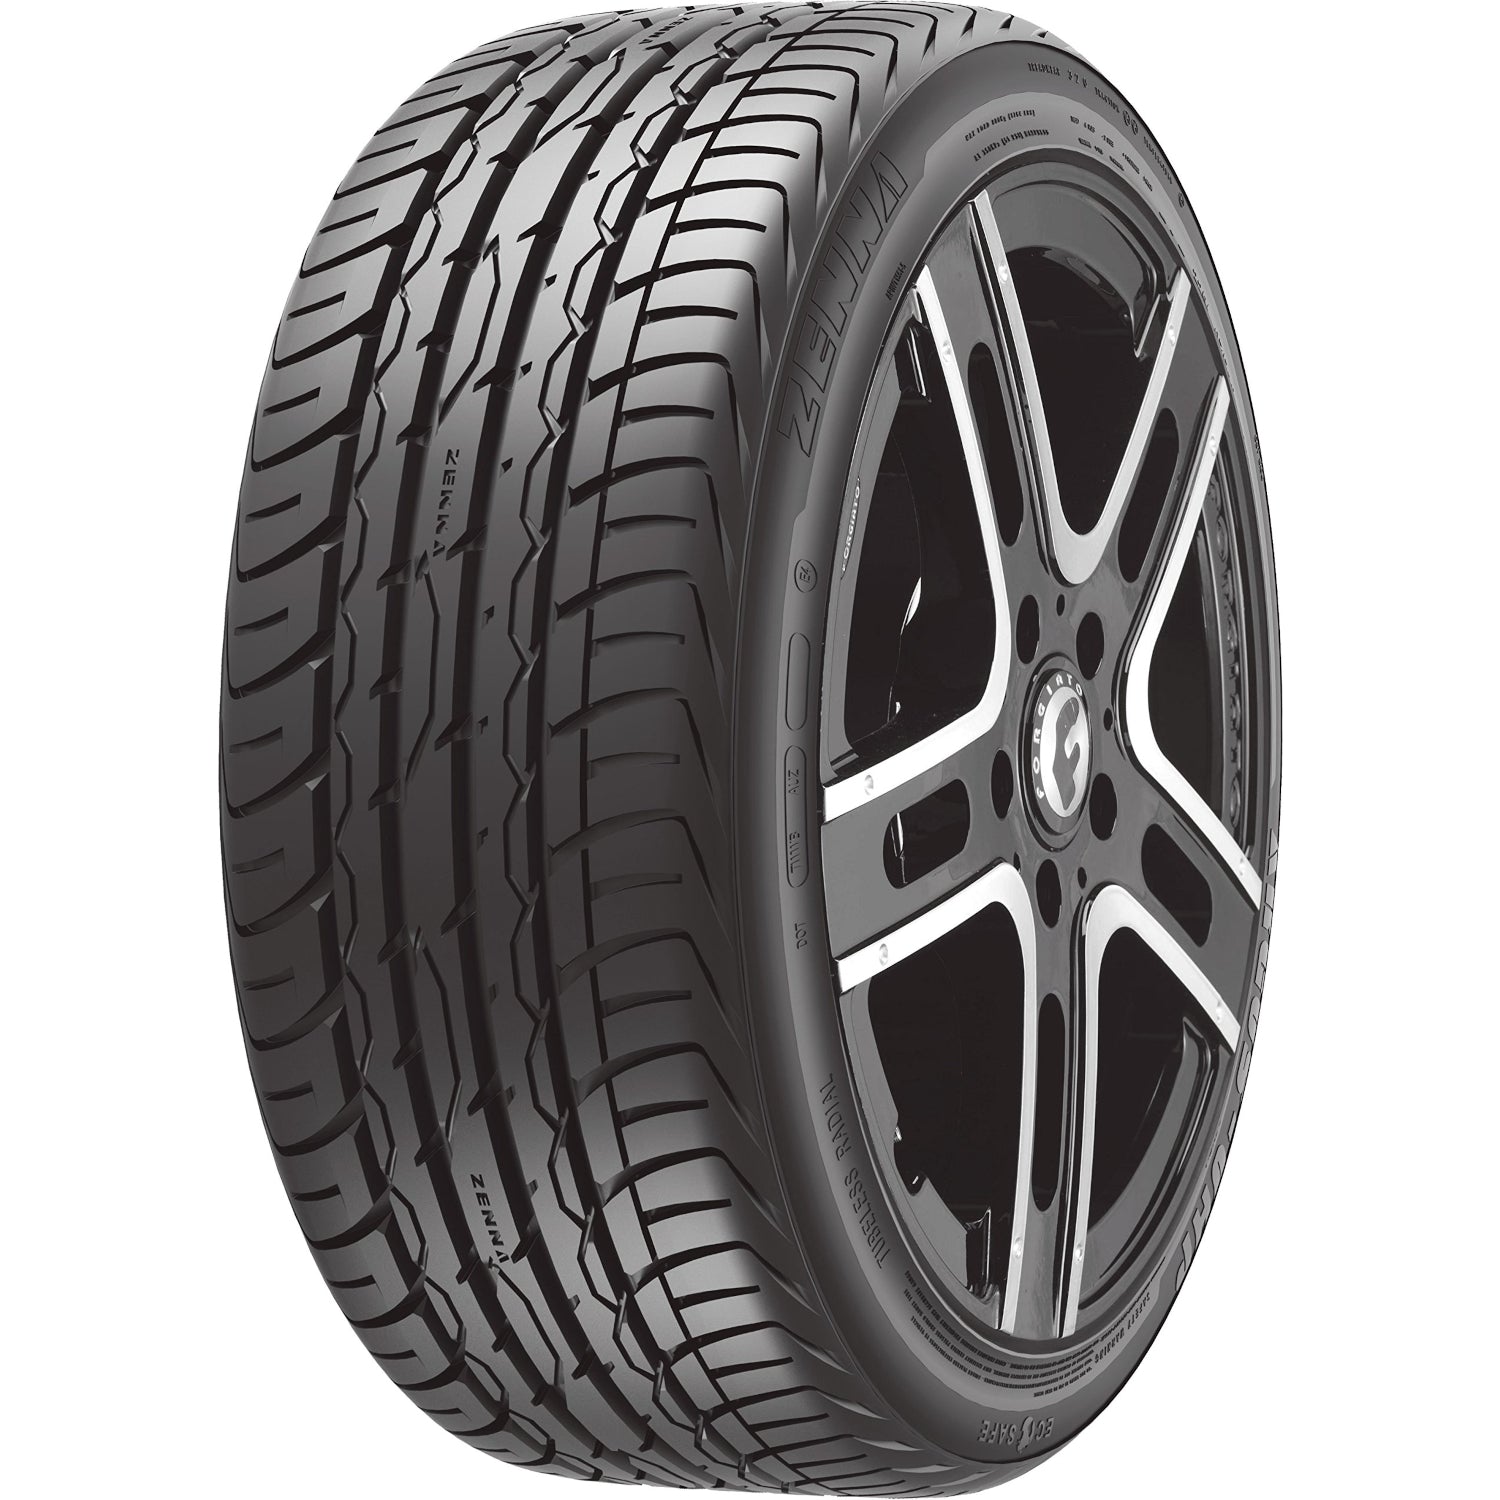 Zenna Argus UHP 225/55ZR19 (28.8x8.9R 19) Tires